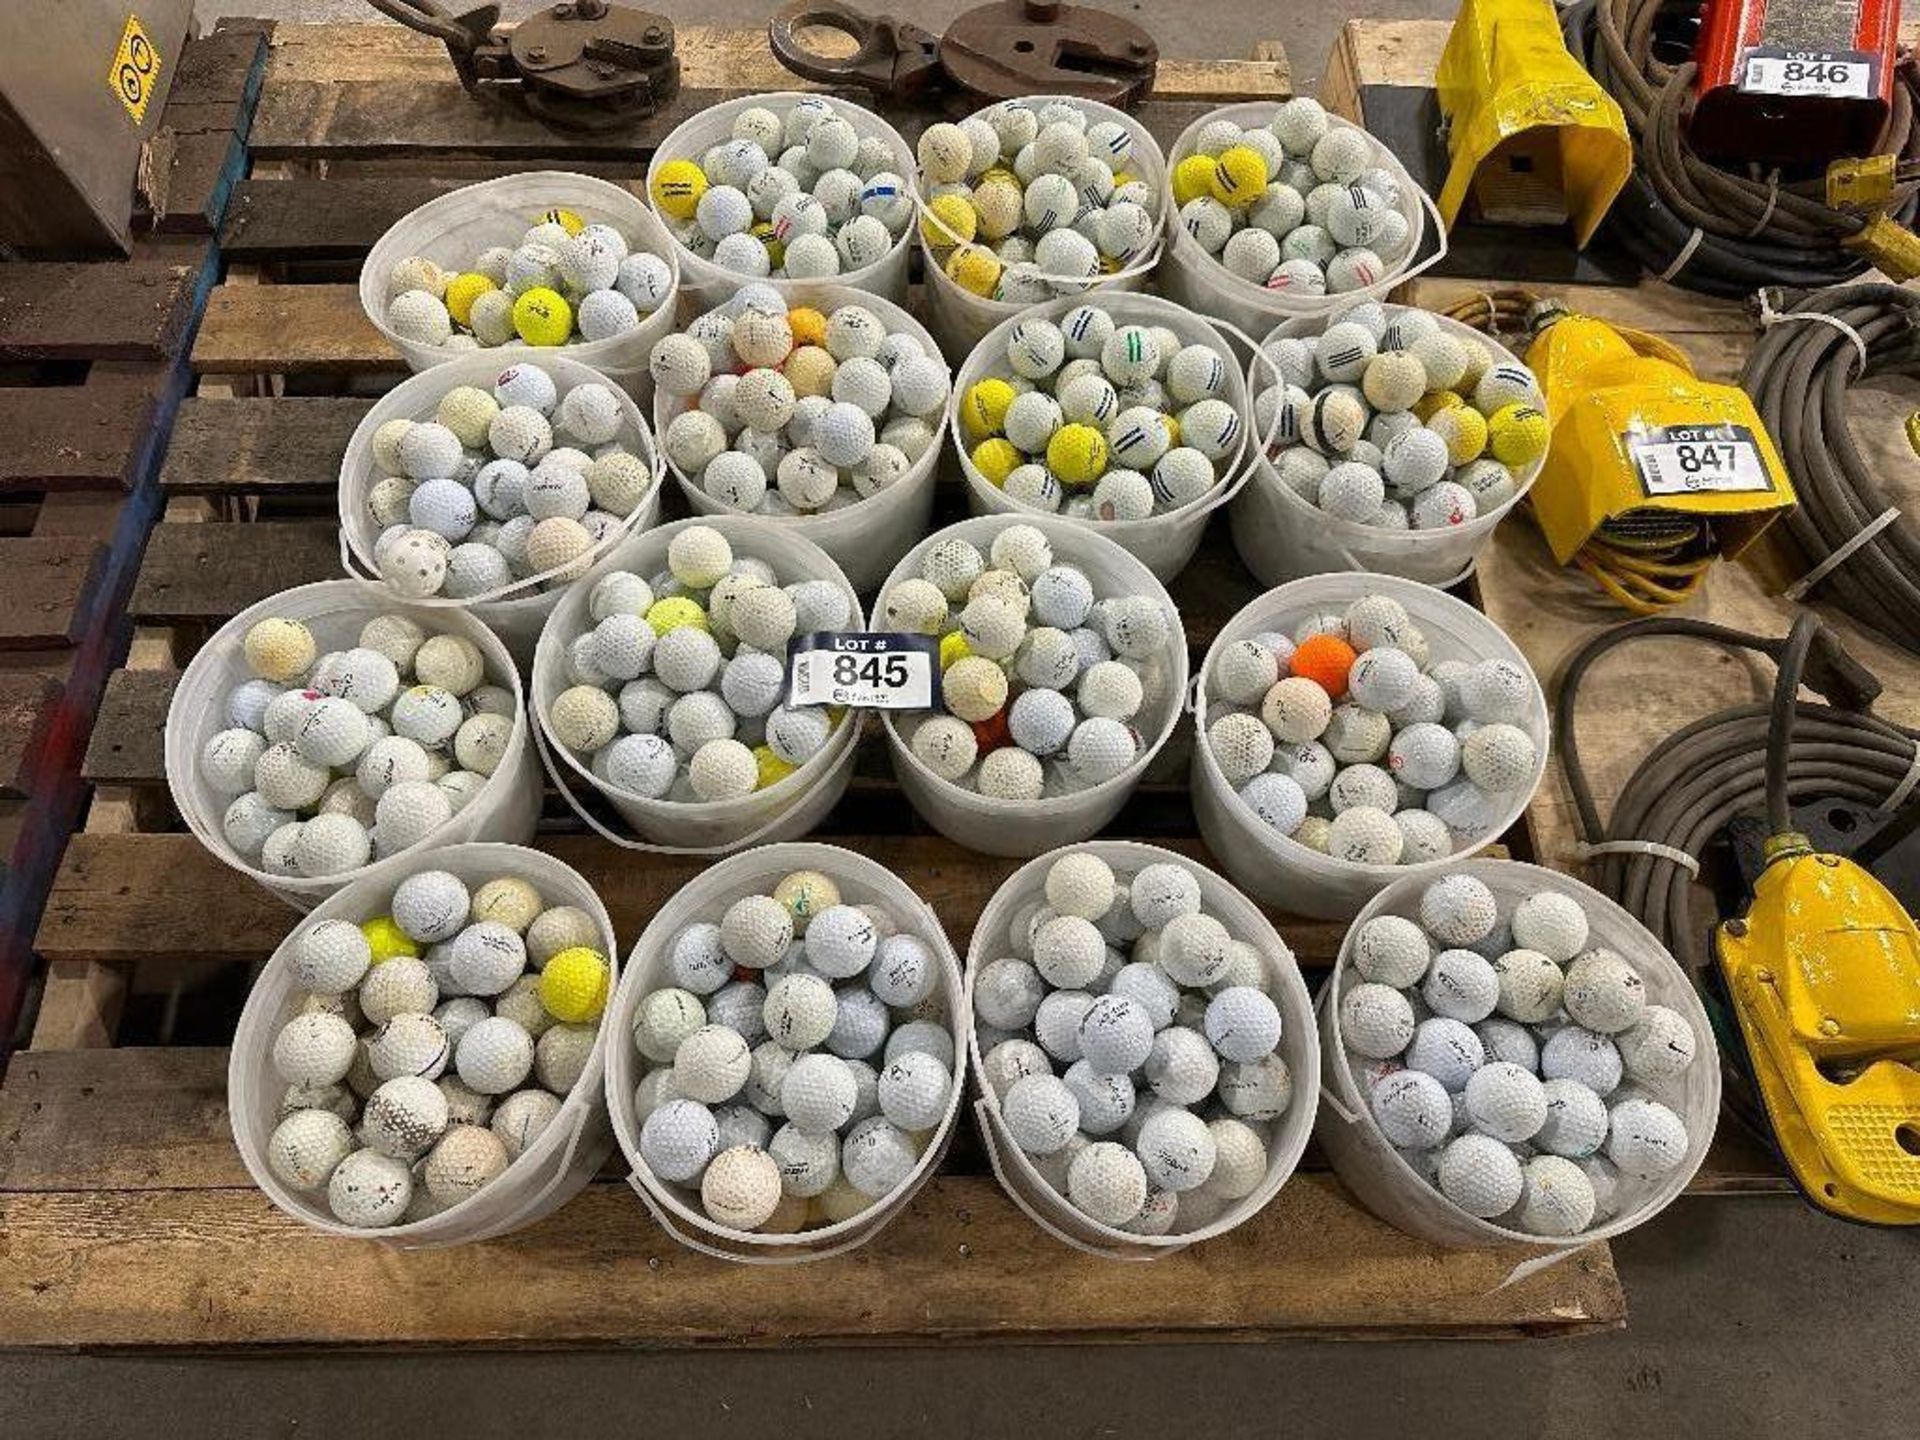 Pallet of (12) Pails of Asst. Golf Balls